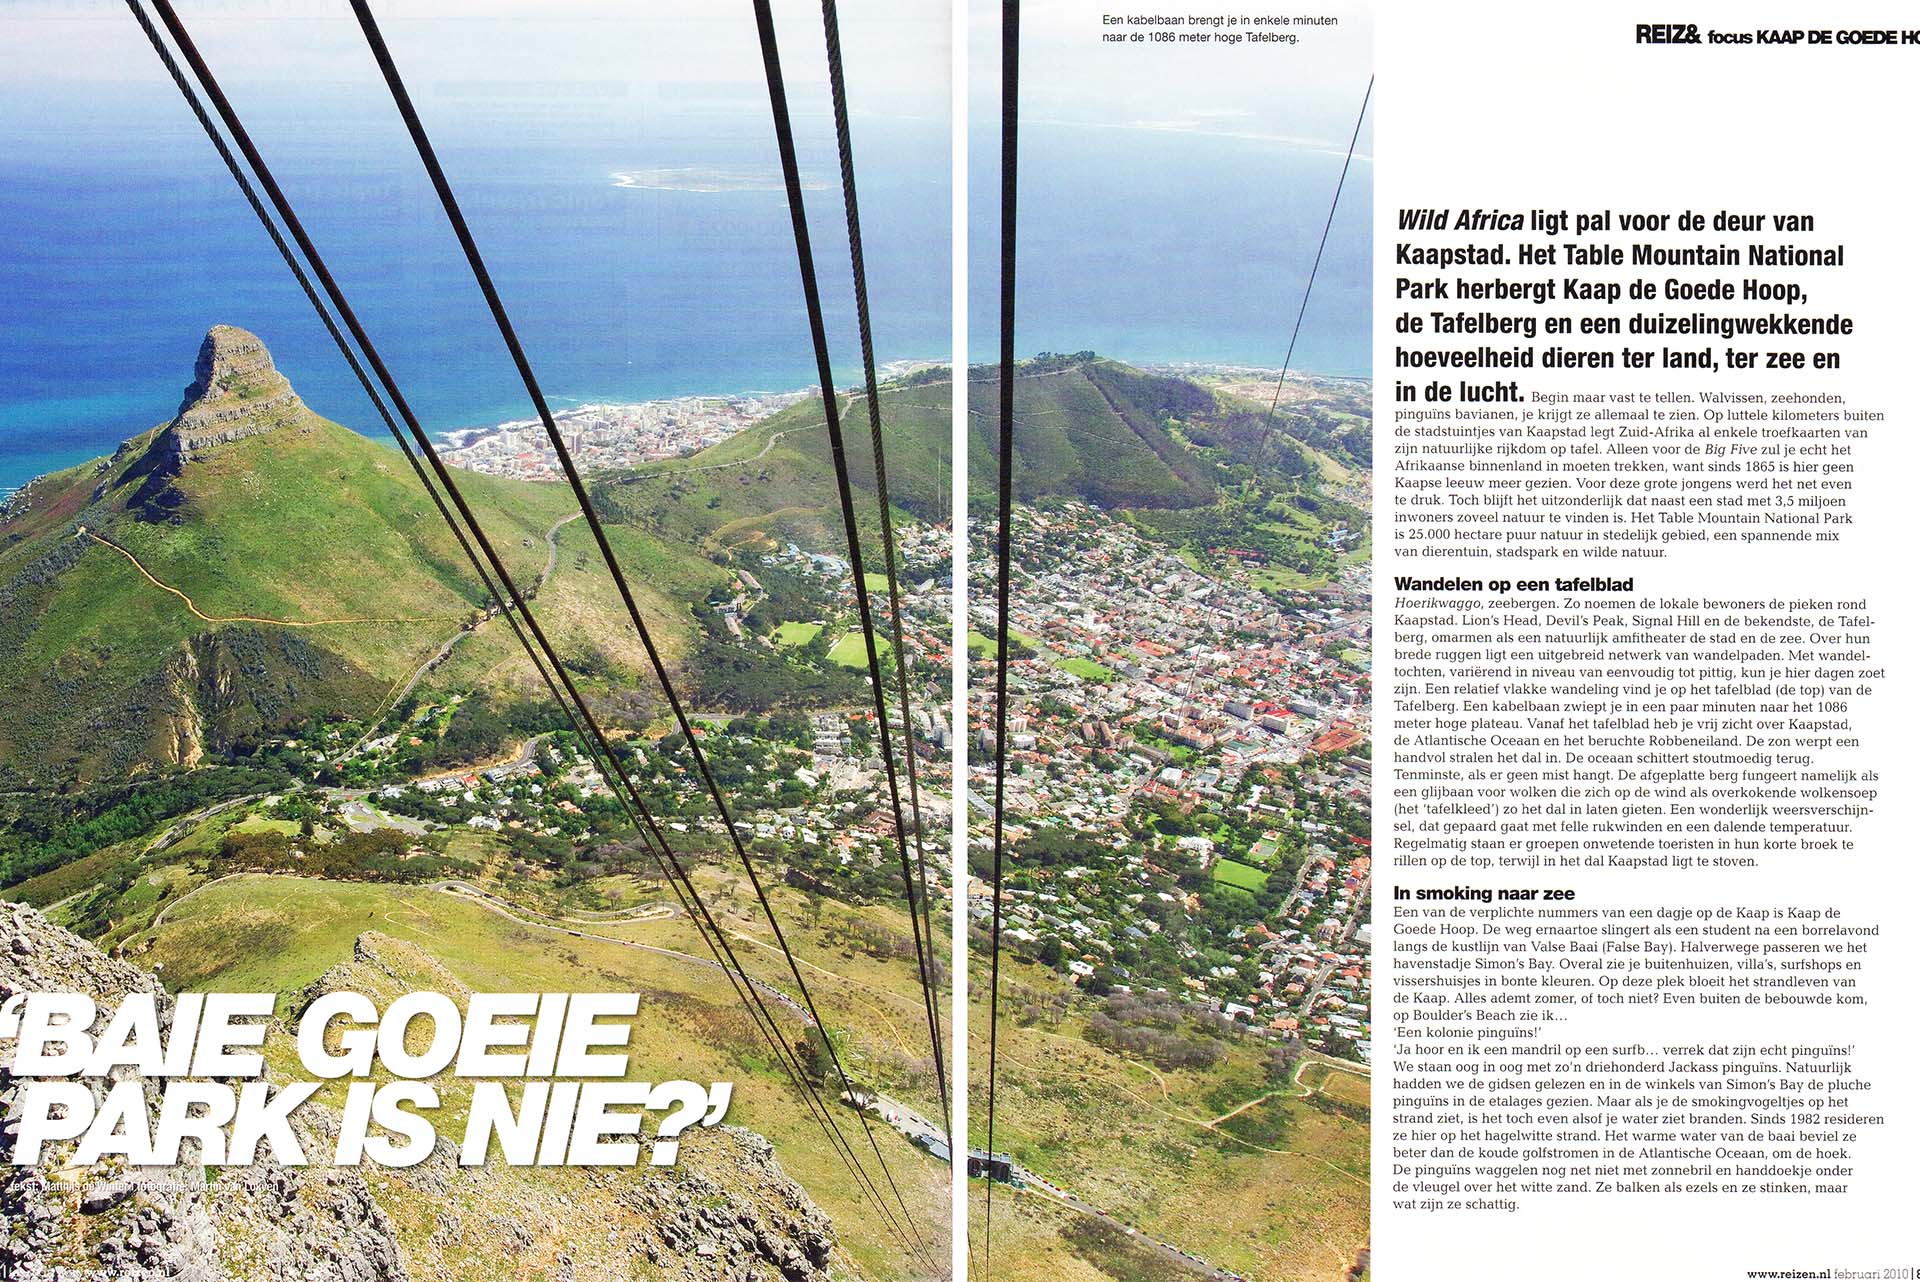 Kaapstad gezien vanaf de Tafelberg, met de kabels van de kabelbaan.